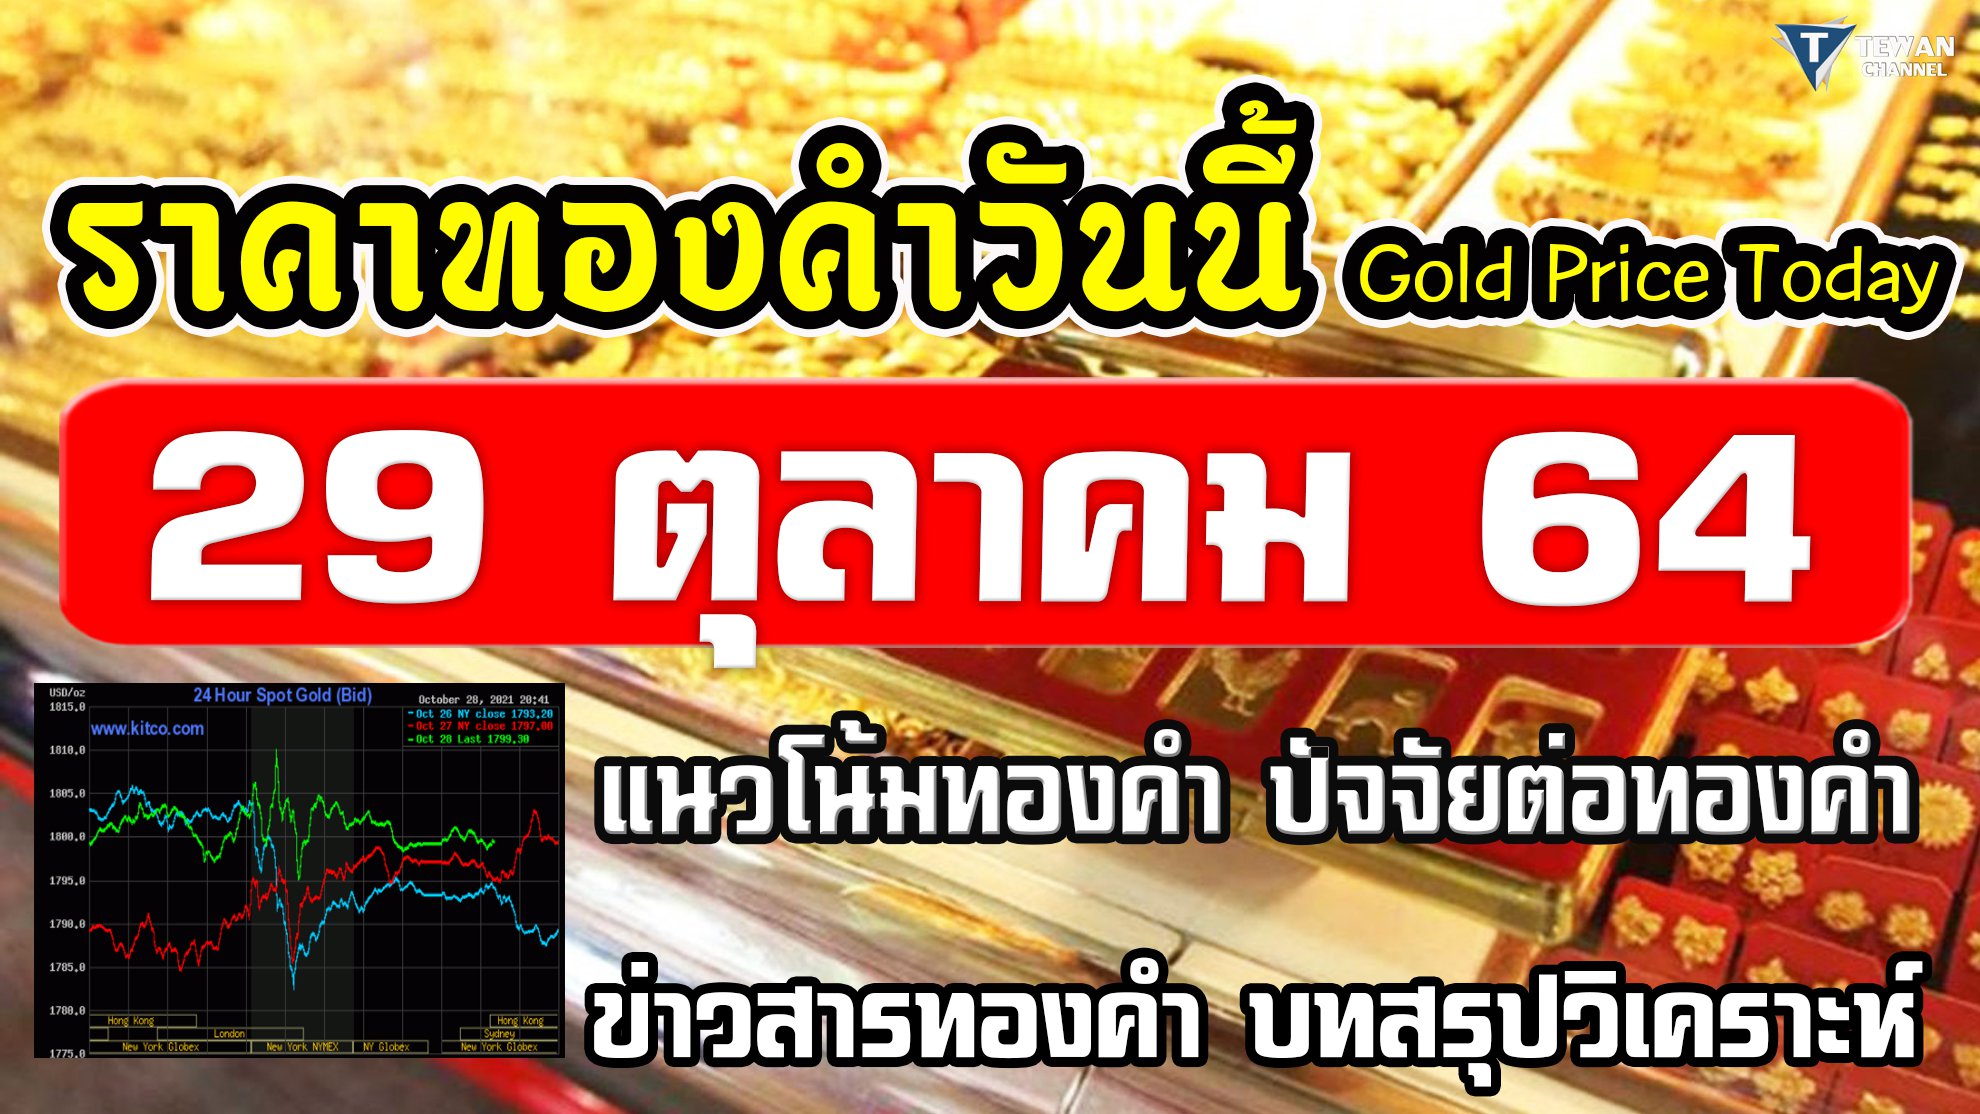 ราคาทองวันนี้ 29ต.ค.64 แนวโน้มทองคำ ราคาทองคำวันนี้ วิเคราะห์ทองคำ ปัจจัยทองคำ 29/10/64 ราคาทอง Gold Price